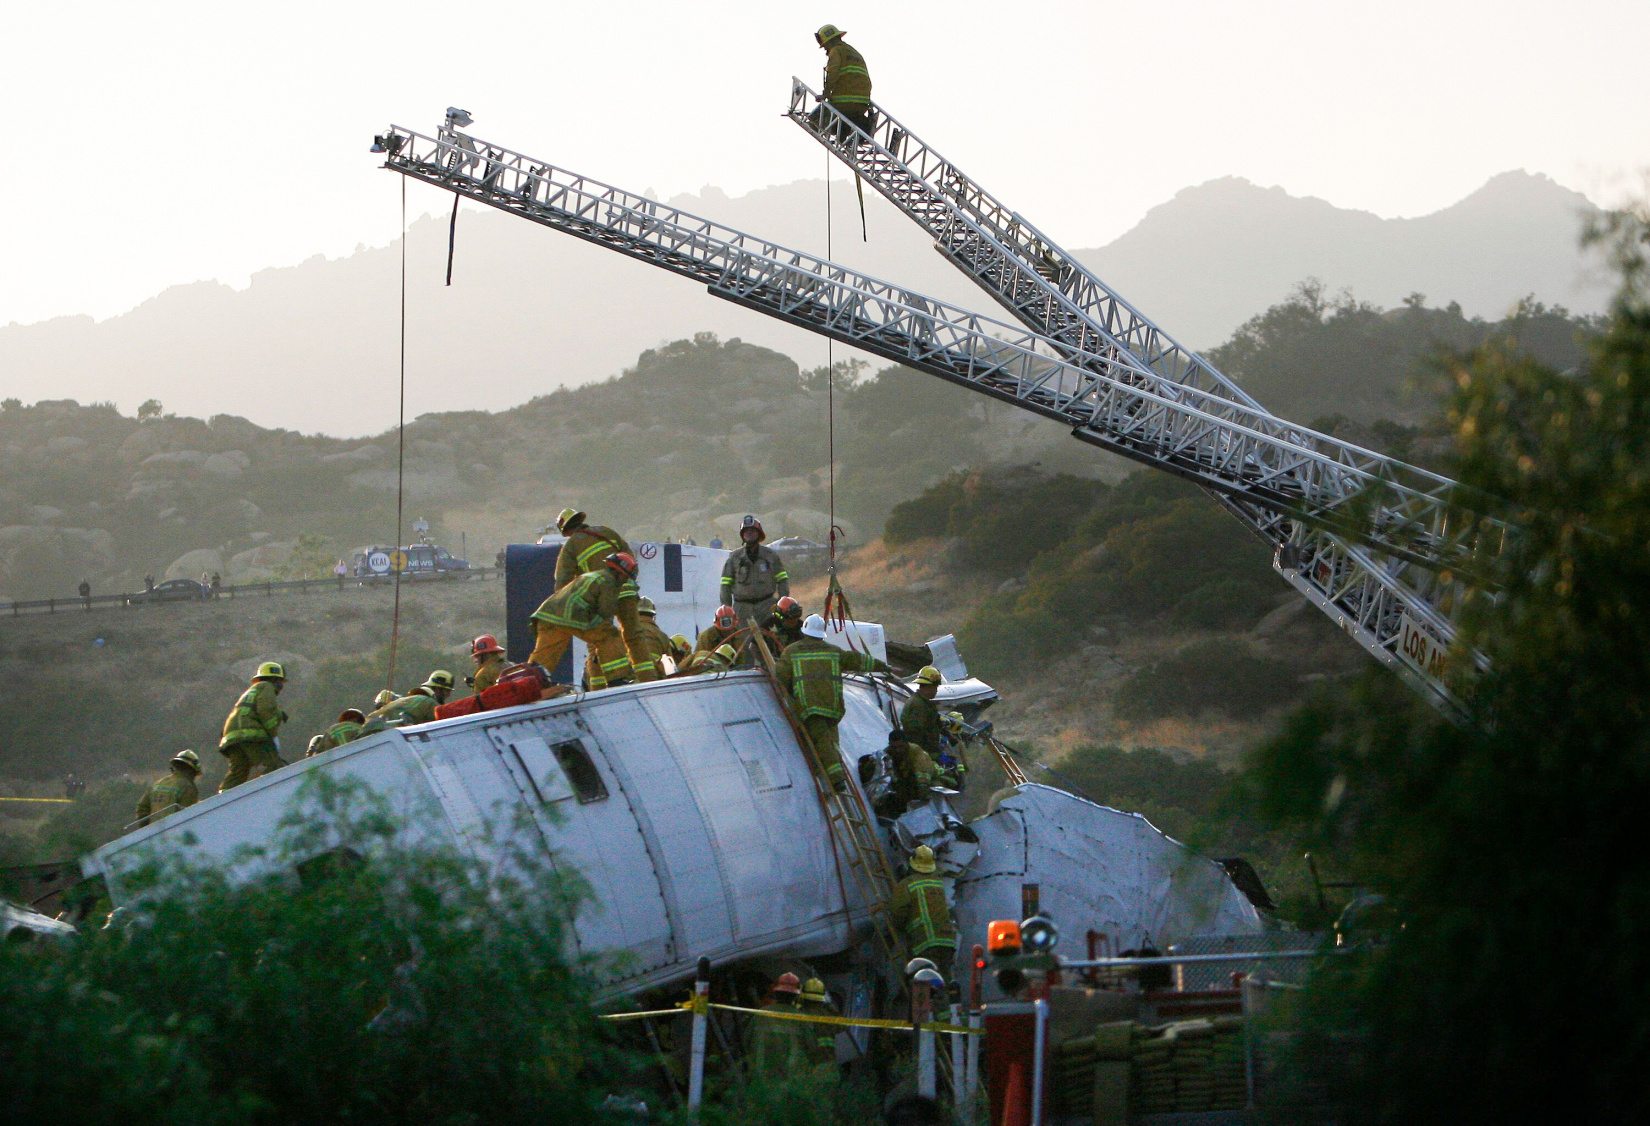 (LC: 20 юли-22) Пожарникарите работят за спасяване на жертвата, след като влак на Metrolink на път от гара Юниън в Лос Анджелис за Окснард се сблъска с товарен влак в района на Чатсуърт, 12 септември 2008 г. Над 300 пожарникари работят, за да потушат пламъците и спасени жертви, според пожарната служба в Лос Анджелис. Кредит за изображение: Alamy | REUTERS/Гъс Руелас (САЩ) | ID: 2D1M052